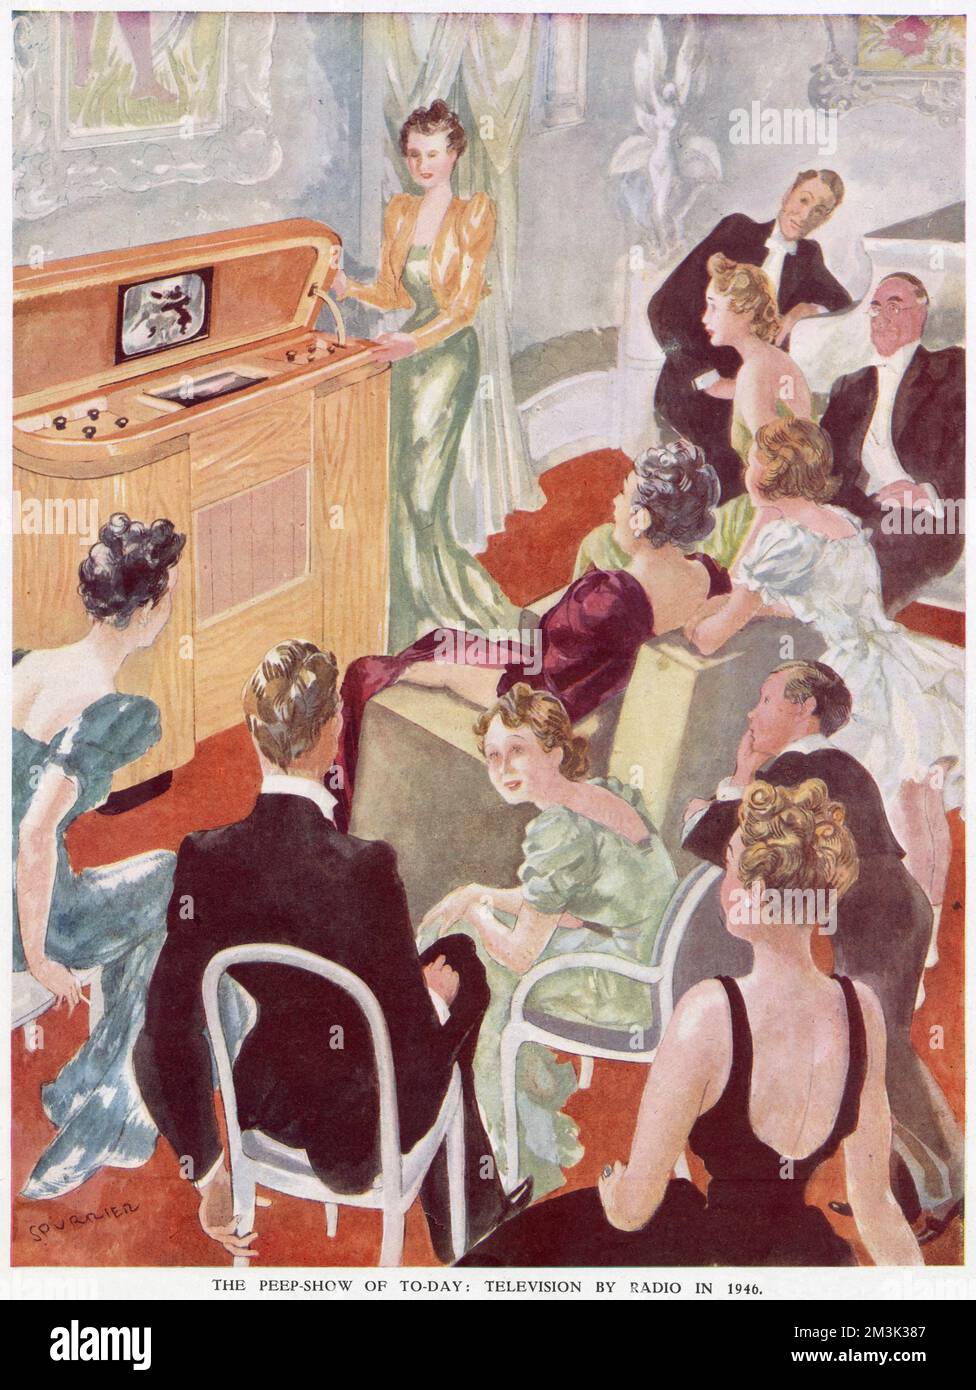 Eine Gruppe von Leuten, in formeller Abendgarderobe, die in einem Wohnzimmer Fernsehen, 1946. Man könnte vernünftigerweise annehmen, dass dies eine Dinnerparty zeigt, die vor oder nach ihrem formellen Essen ein wenig im Fernsehen entspannt. Stockfoto